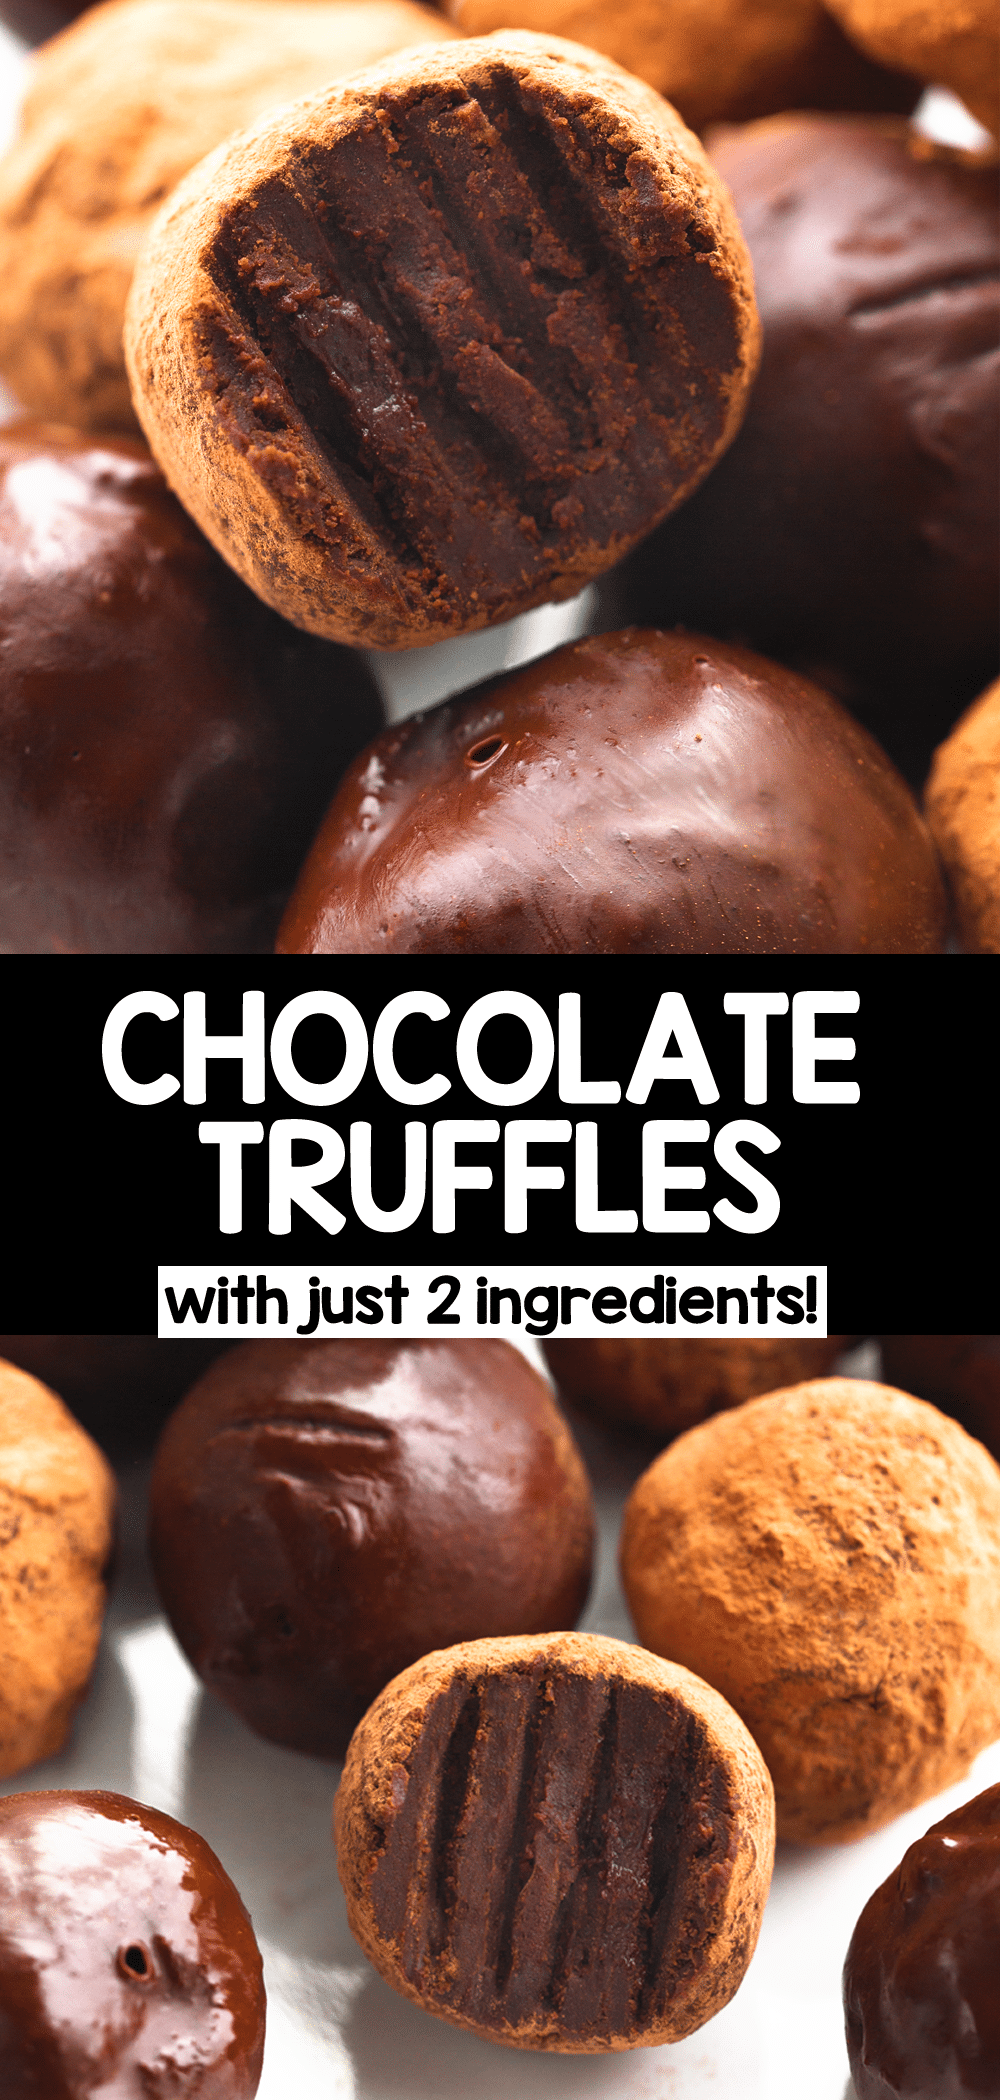 Trufas de chocolate ¡esta receta solo tiene dos ingredientes